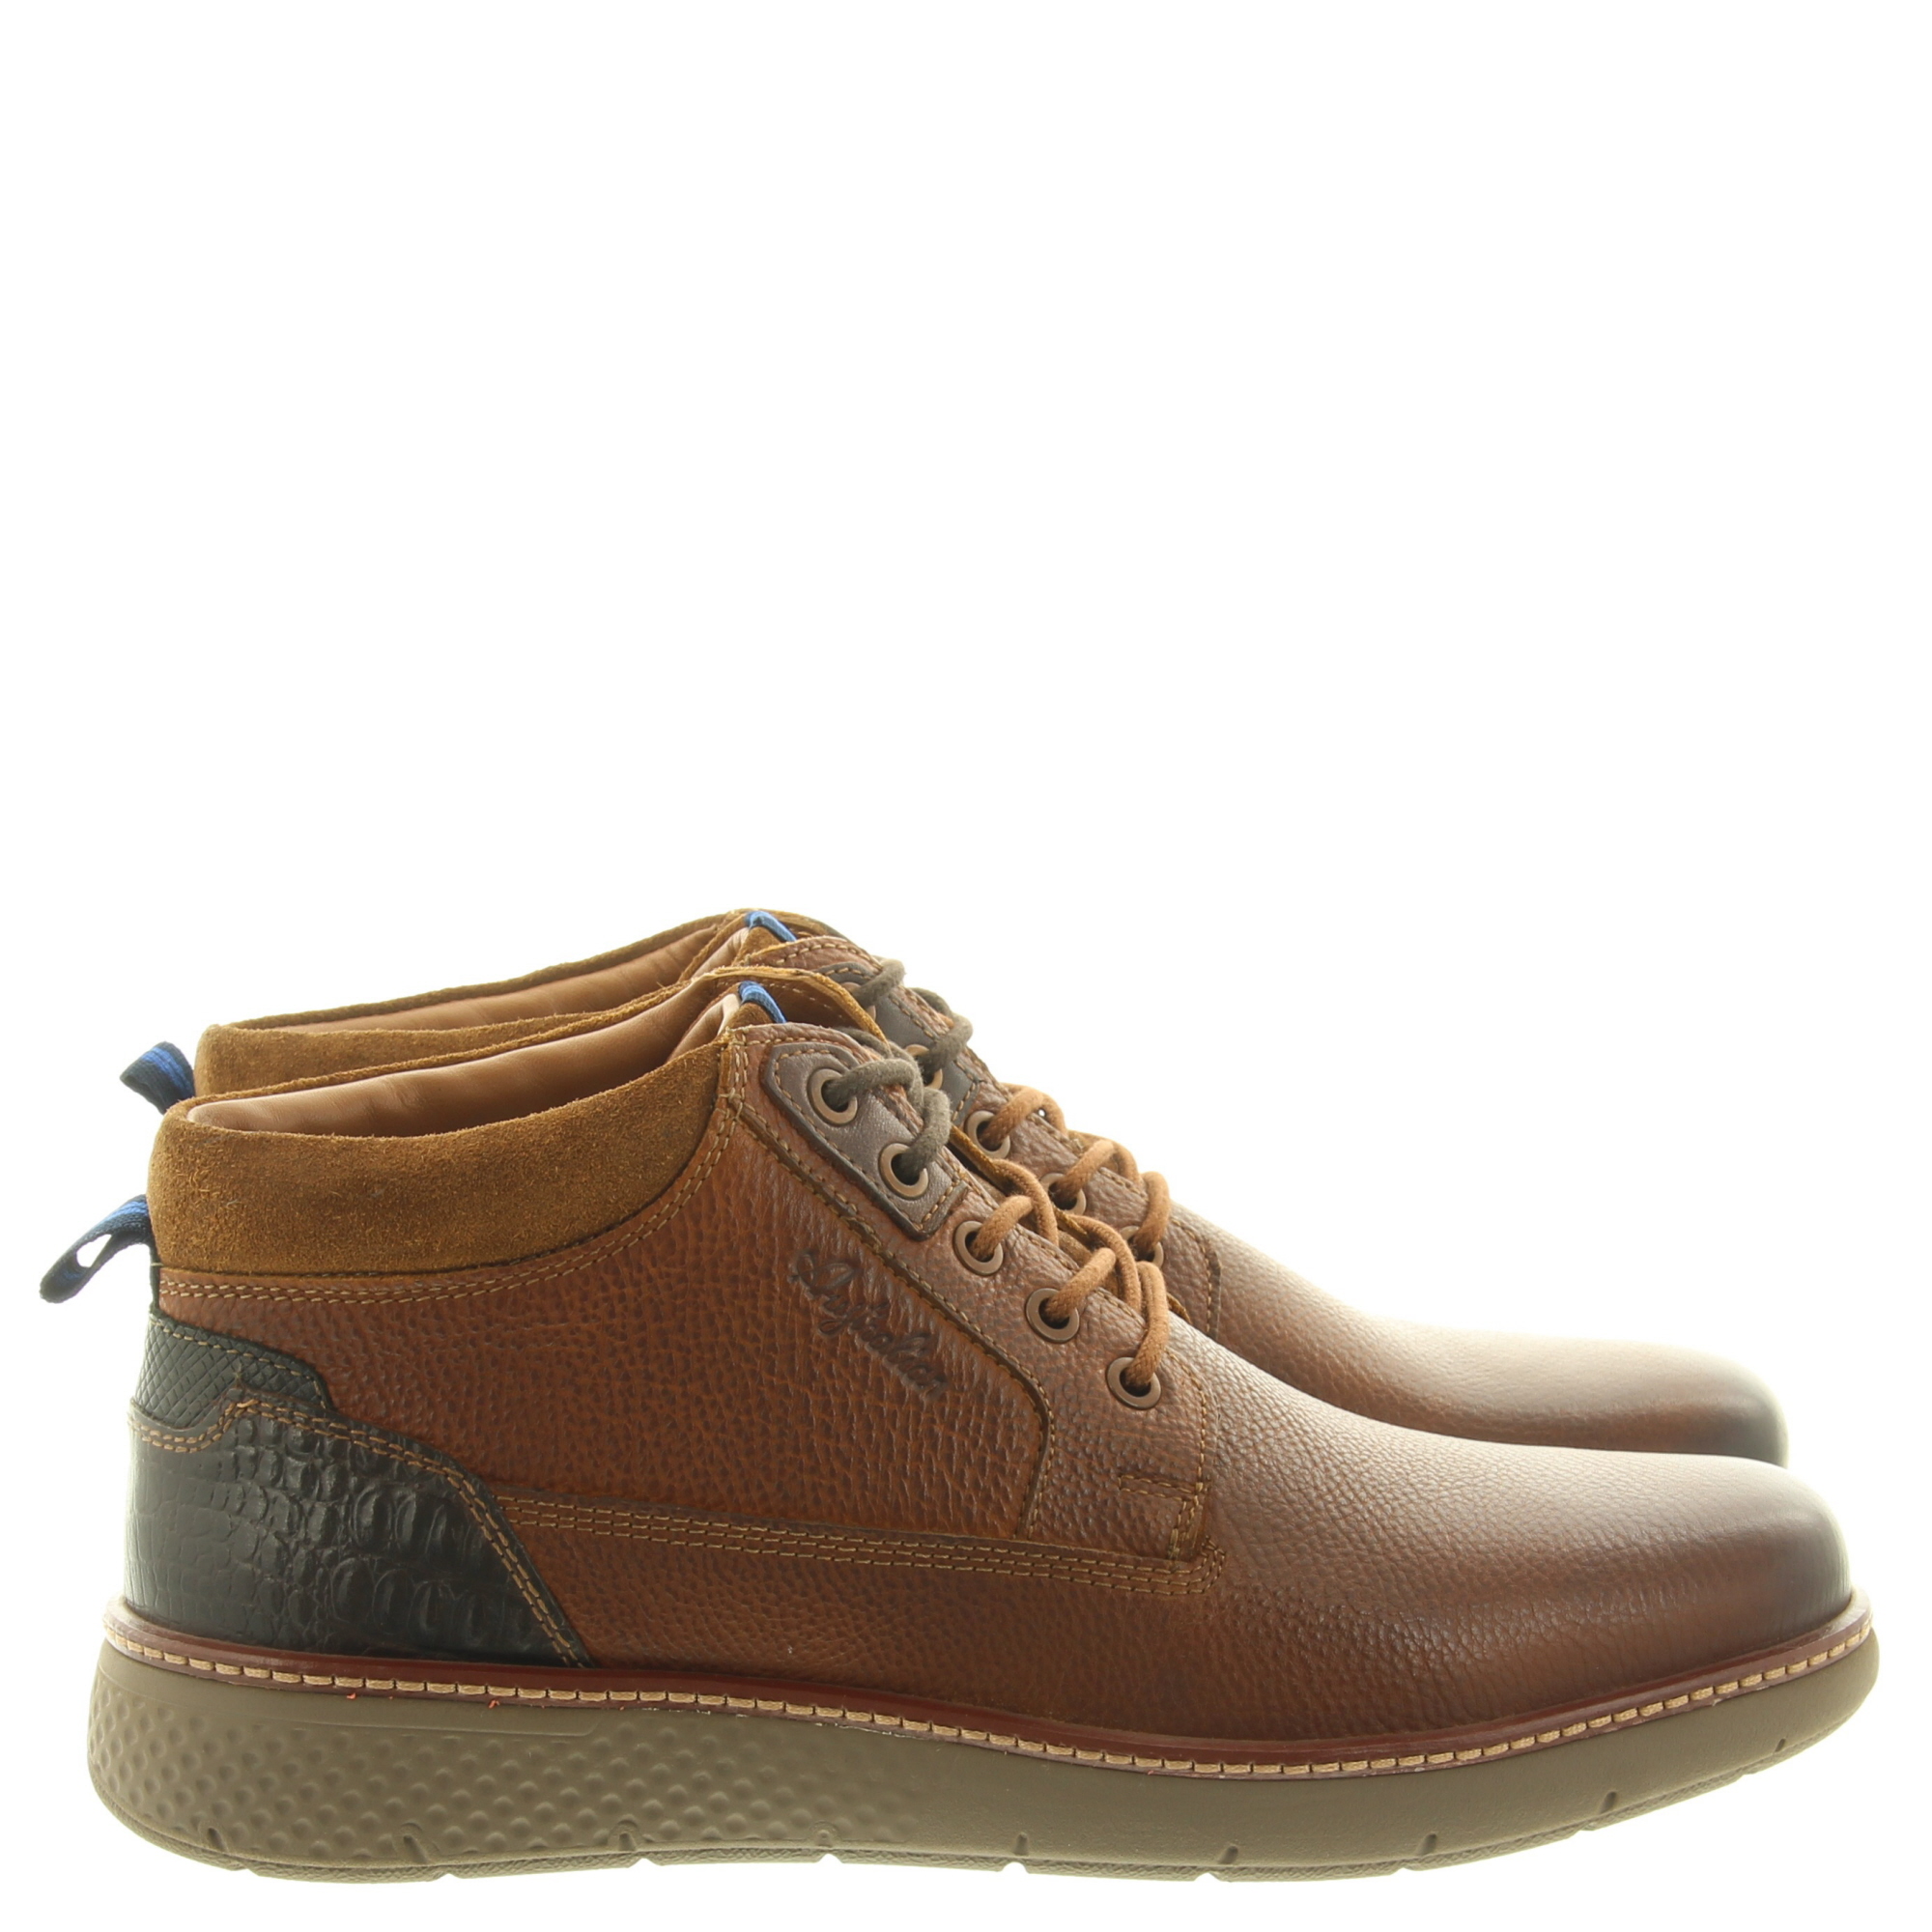 Australian Footwear Dexter 15.1552.01 DJA Cognac Combi